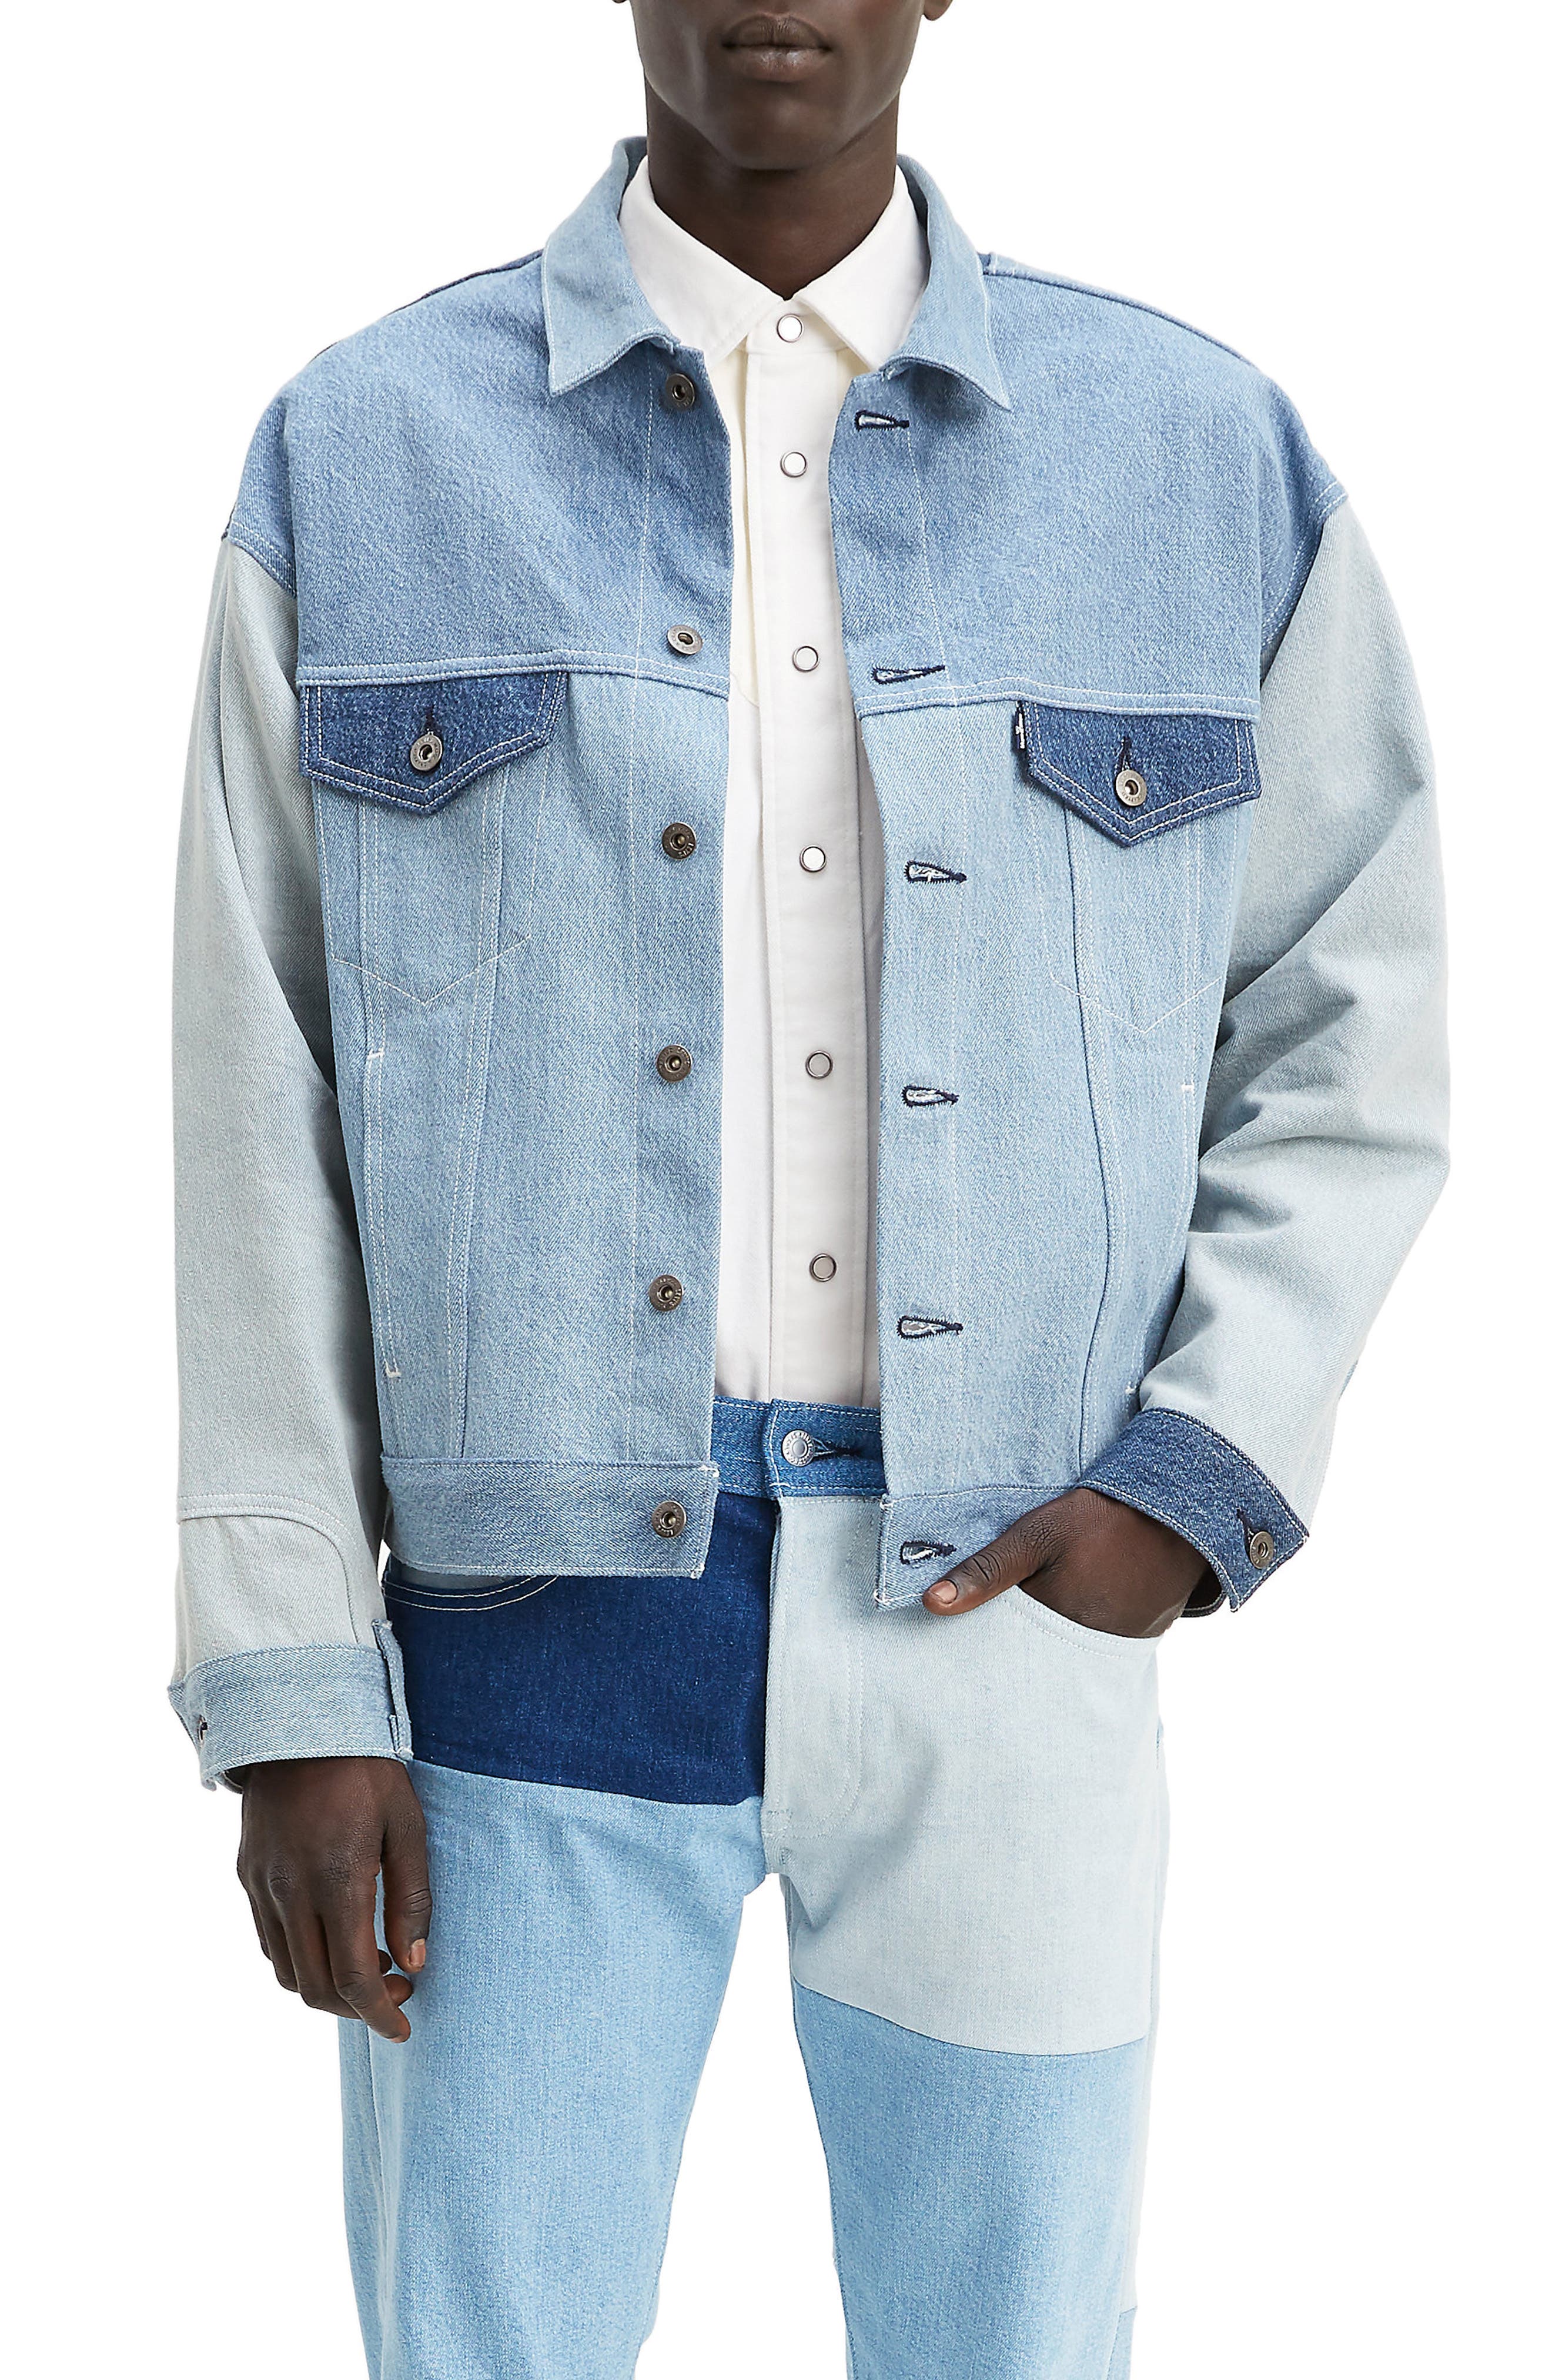 oversized jean jacket levis